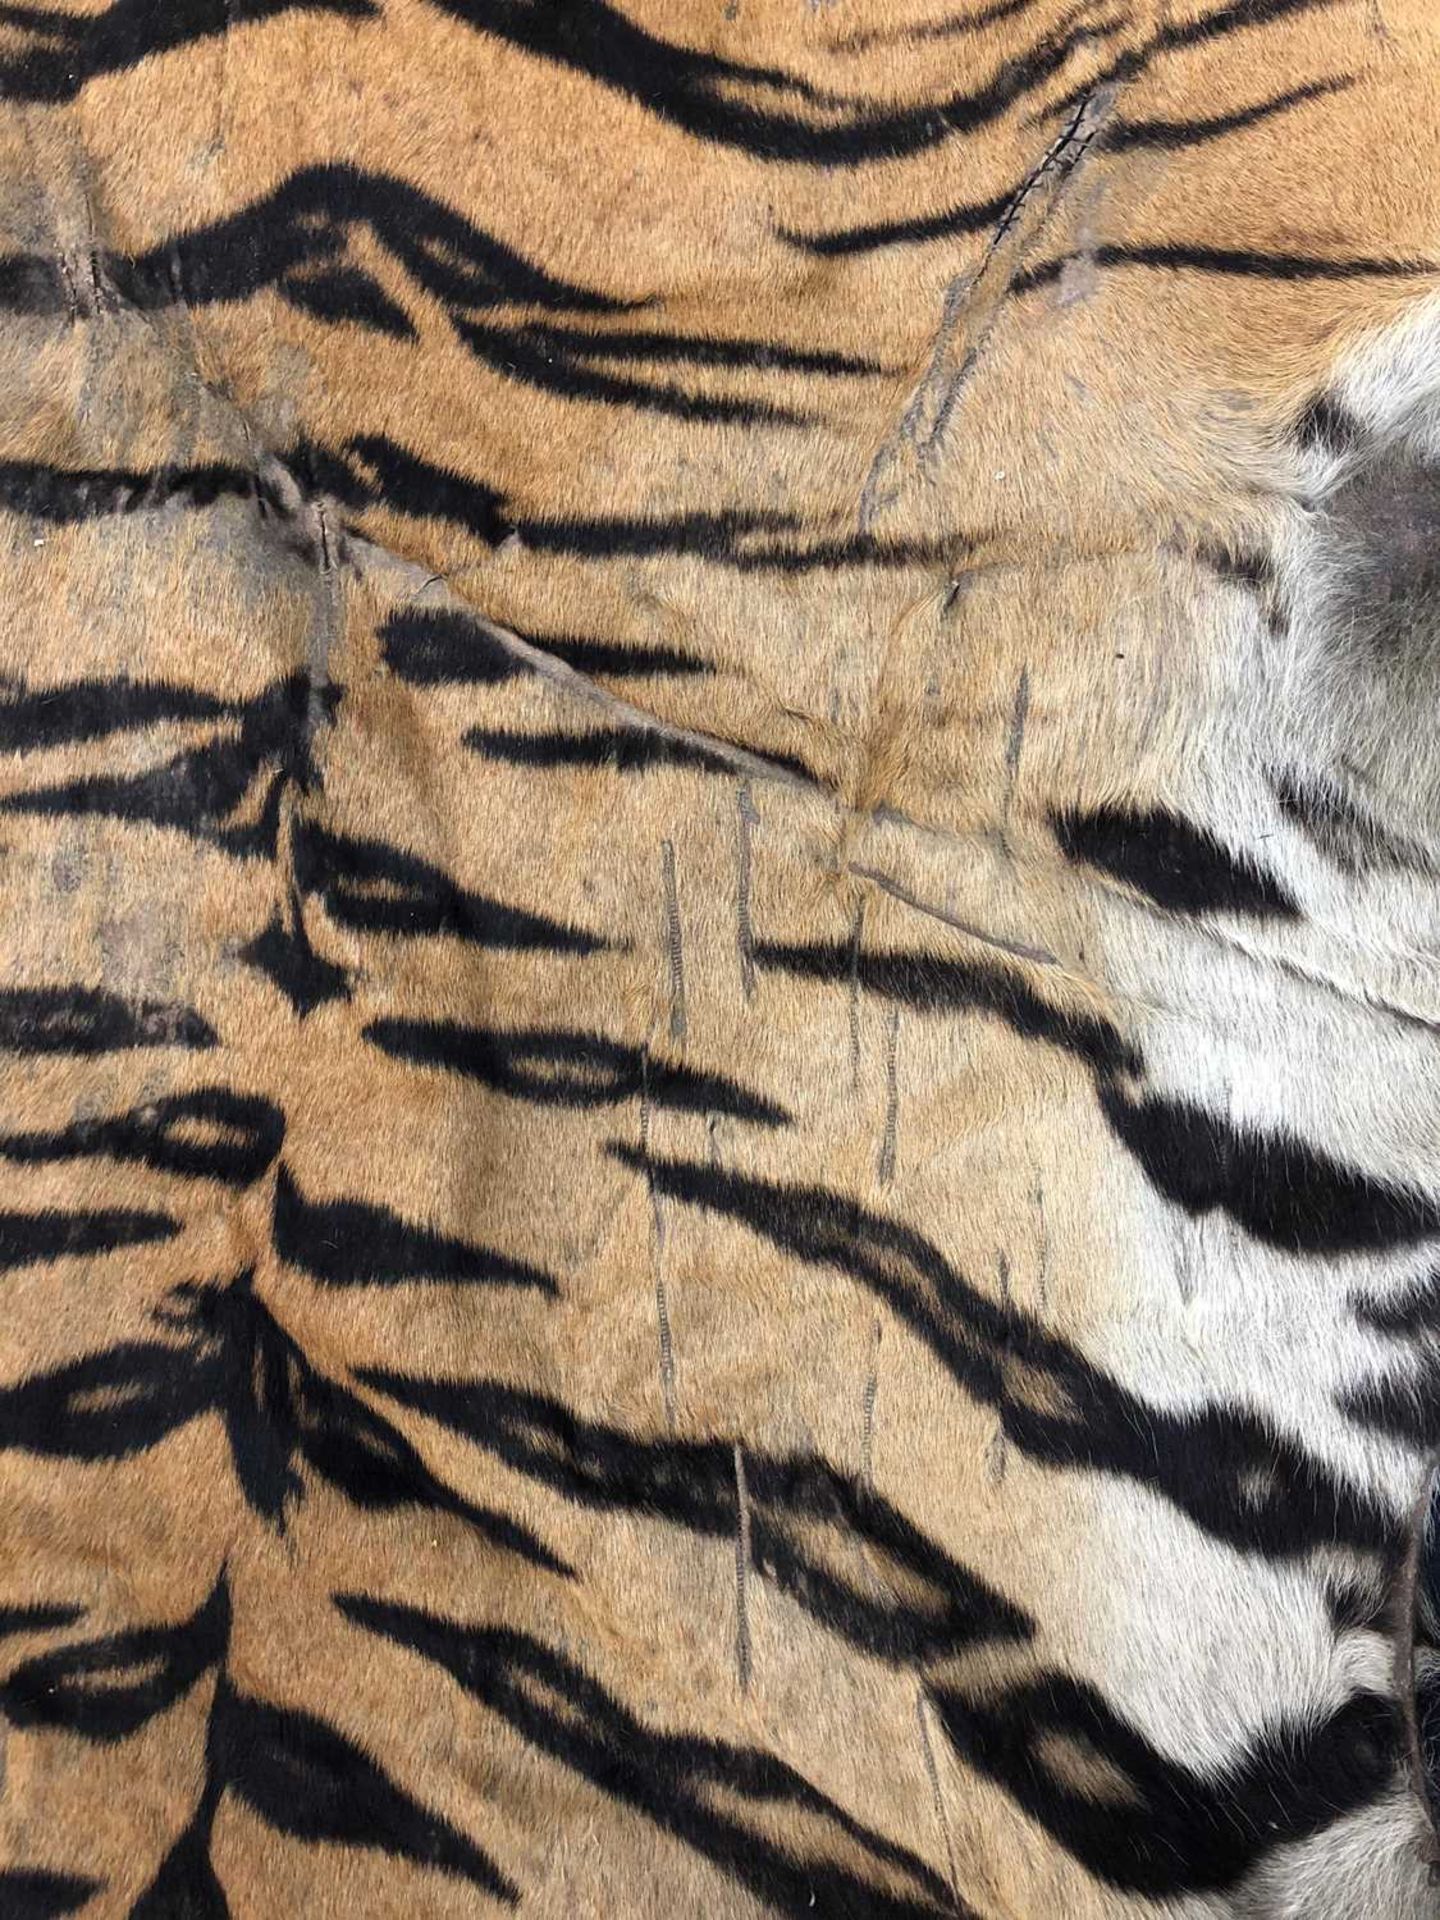 Taxidermy: A taxidermy tiger skin rug by Rowland Ward - Image 8 of 26